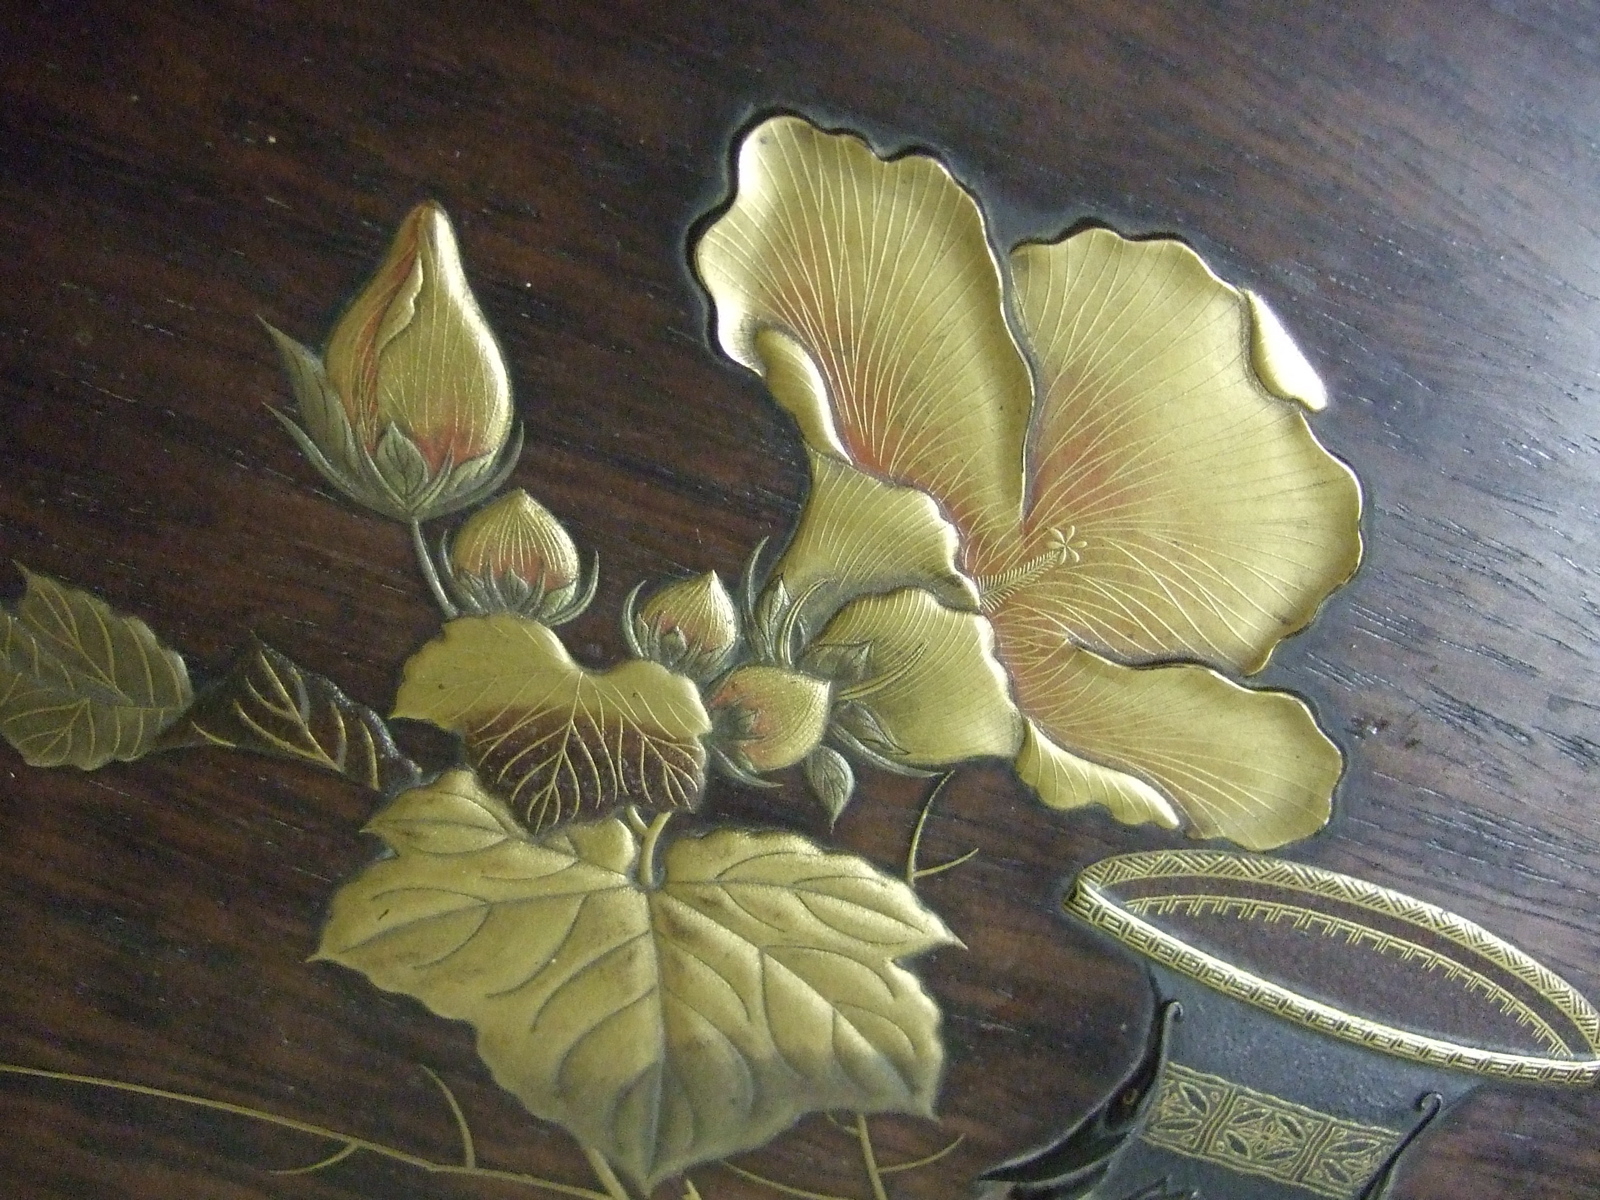 Panneau de bois avec incrustations de vase décoré, fleurs, feuille. (titre factice)